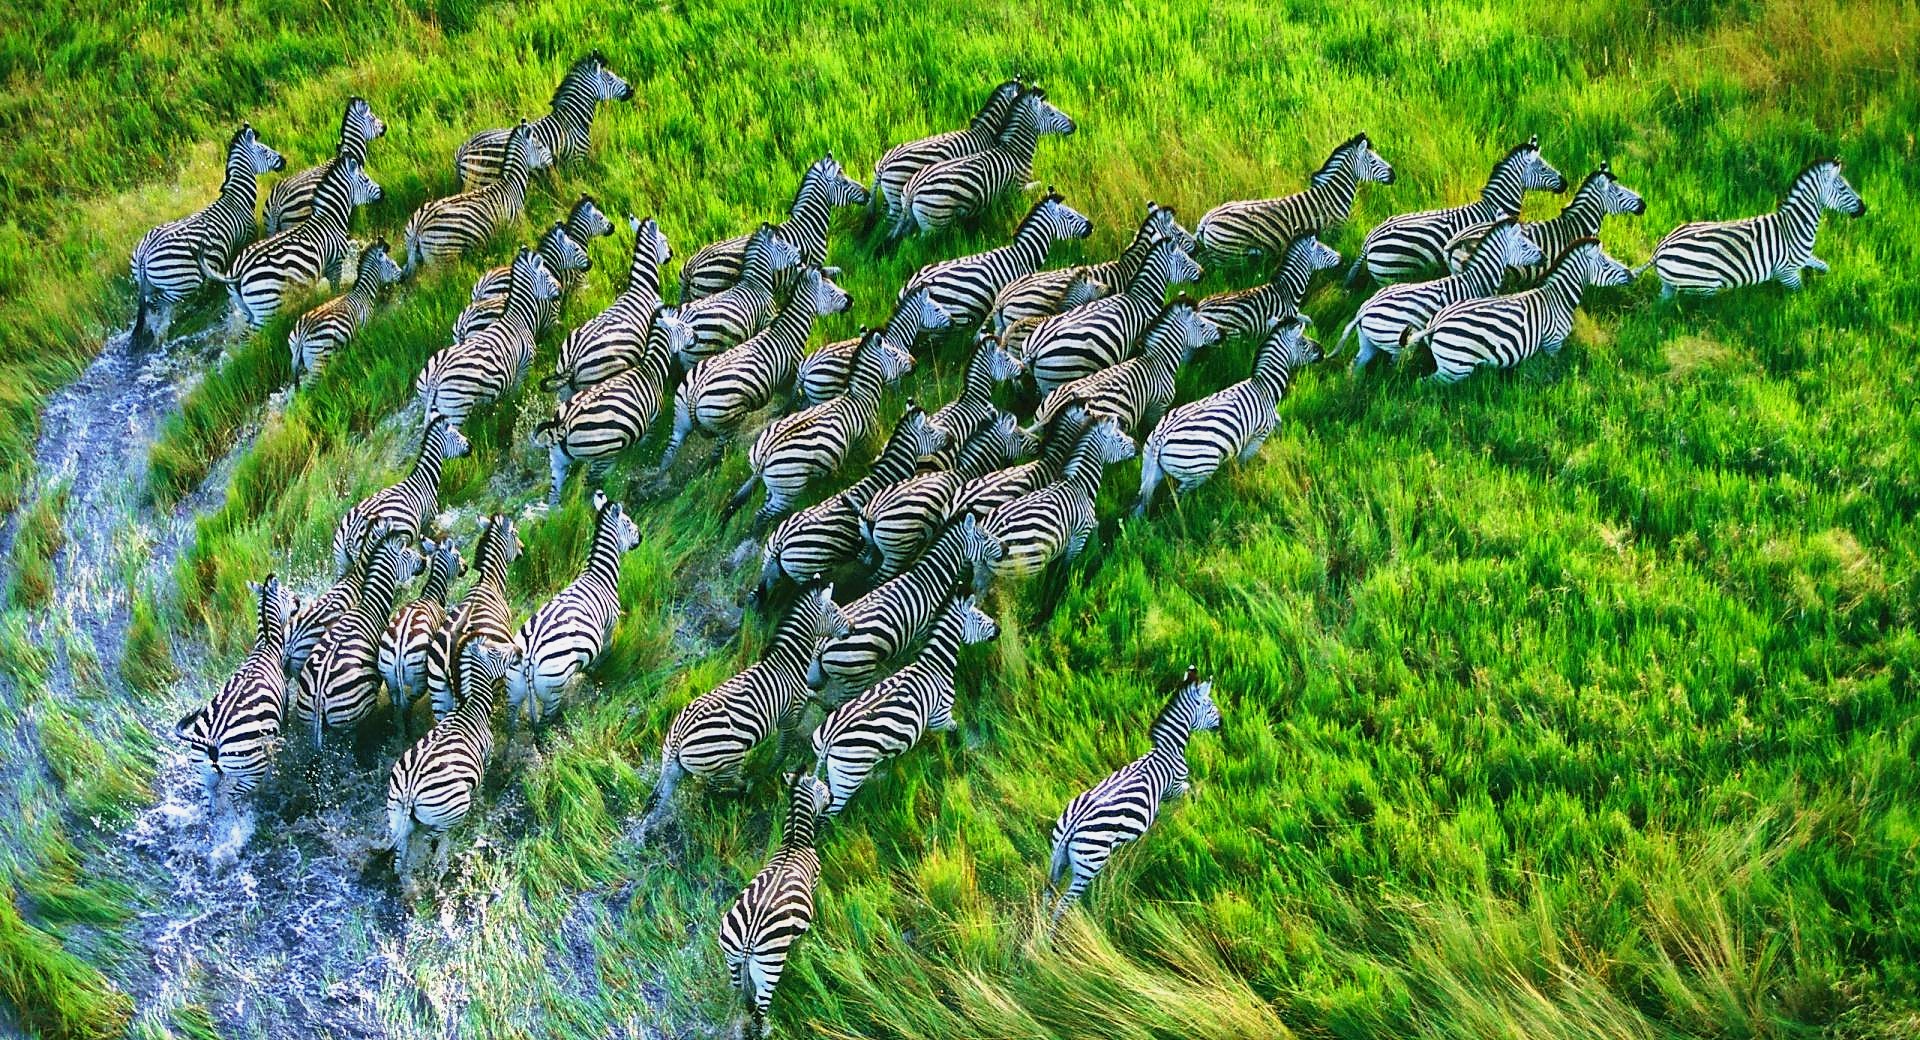 Dazzle of Zebras